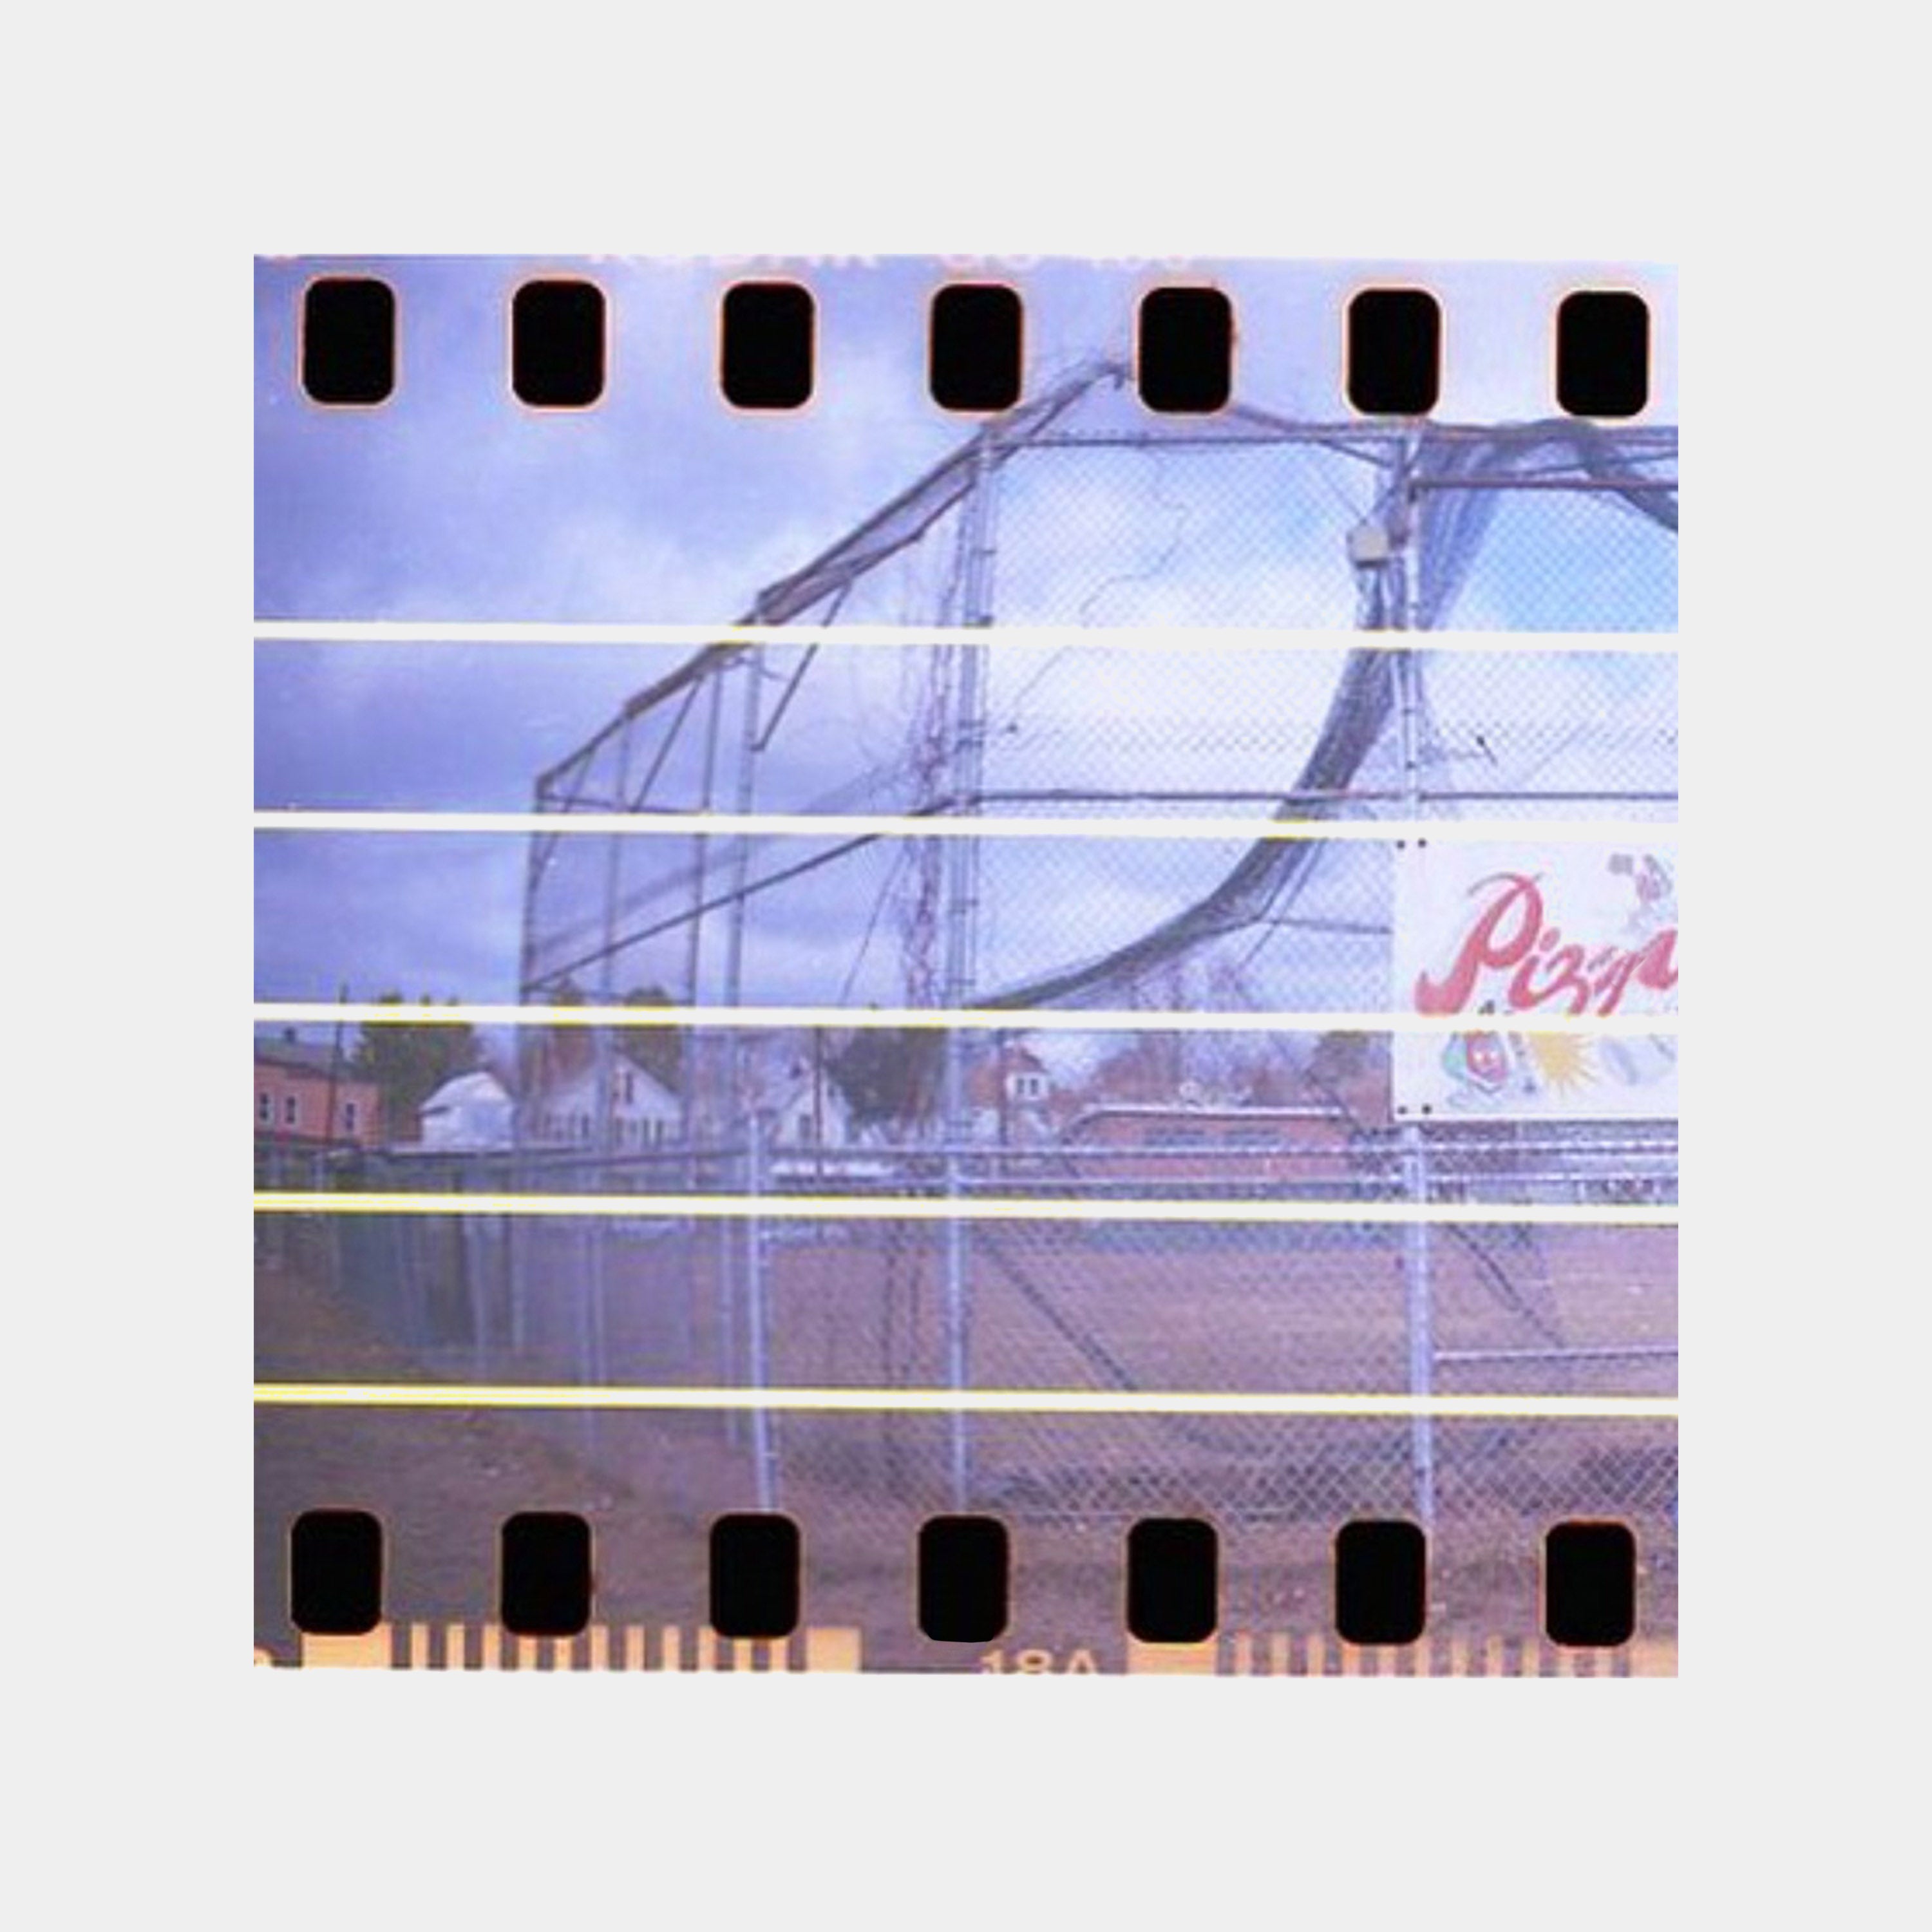 BKIFI Score 35mm Film (24 Exposures)